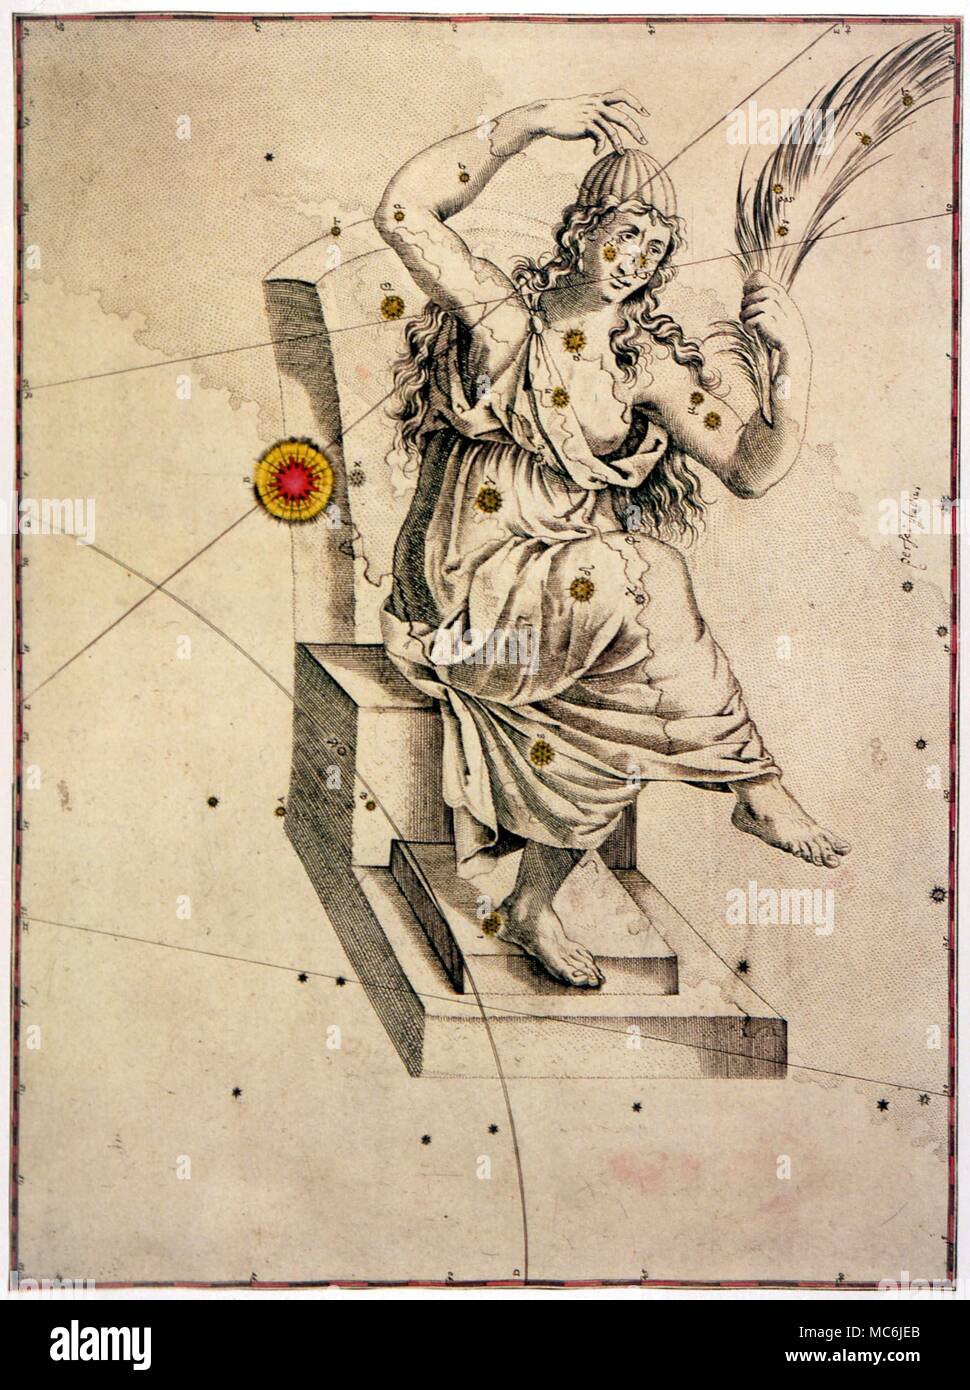 NOSTRADAMUS - PREVISIONE DI NOVA. In quartina 2:41 (pubblicato 1555), Nostradamus predice la Nova, o la nuova stella del 1572. Il Nova è apparso nella costellazione di Cassiopea, impostare nel retro della sua sedia: l'illustrazione (con la Nova contrassegnate in rosso) è dal 1603 mappa di Johann Bayer Foto Stock